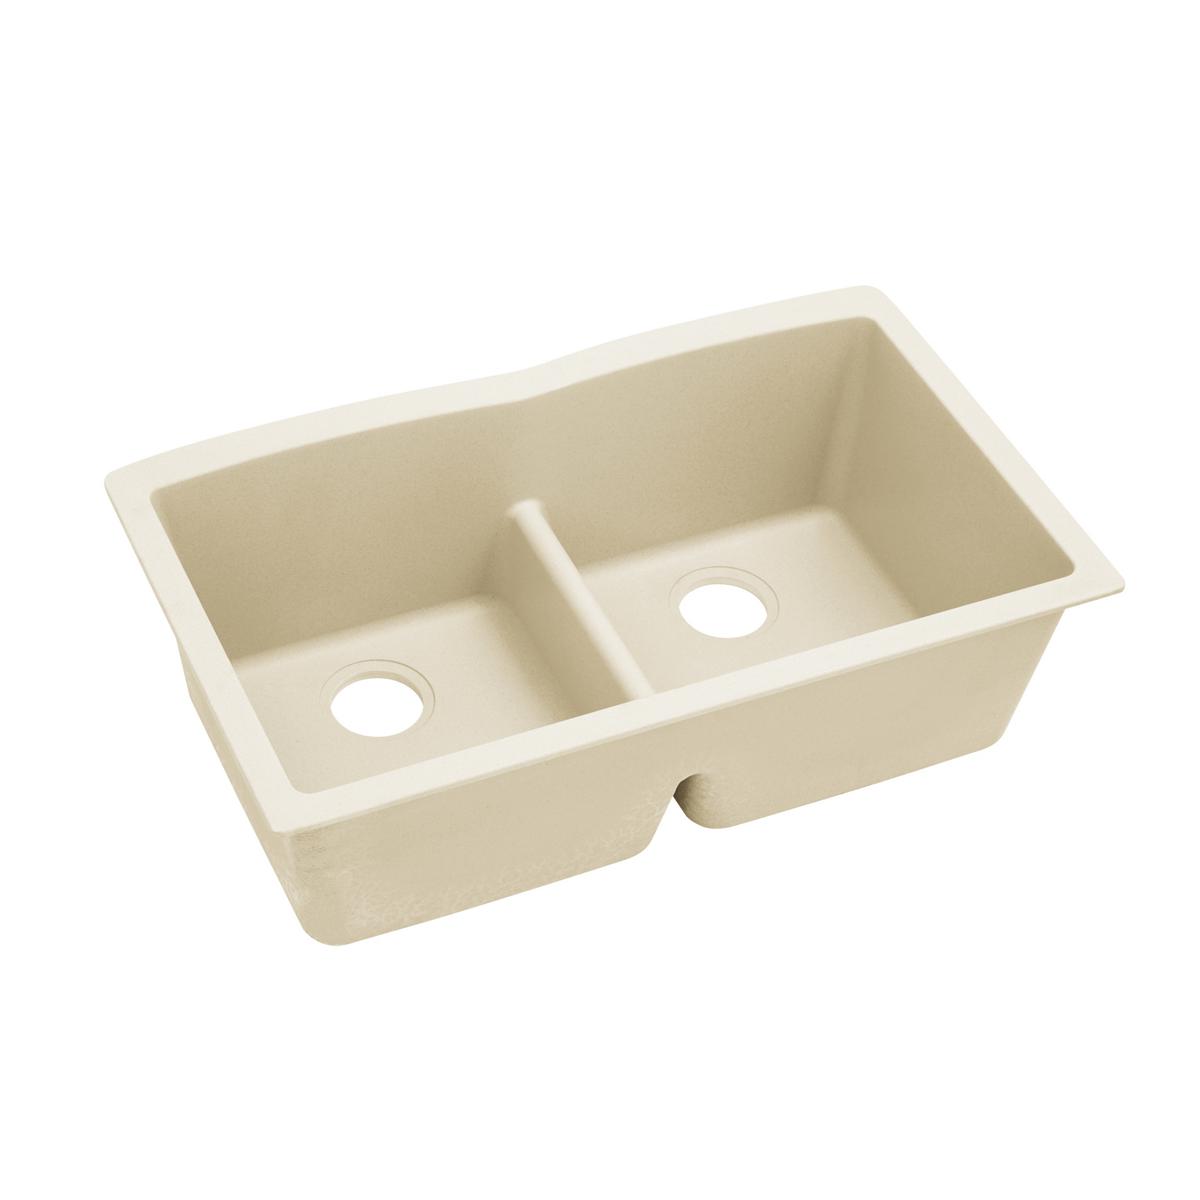 Elkay Quartz Luxe 33" x 19" x 10", Equal Double Bowl Undermount Sink with Aqua Divide, Parchment